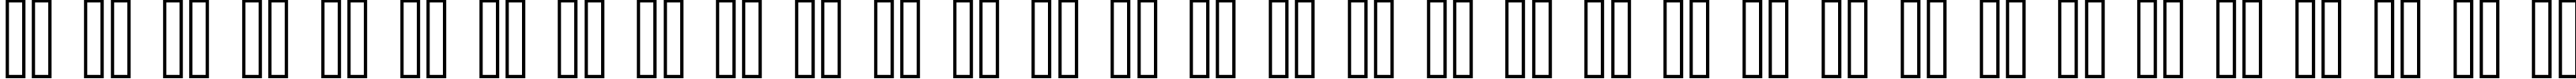 Пример написания русского алфавита шрифтом header 08_68